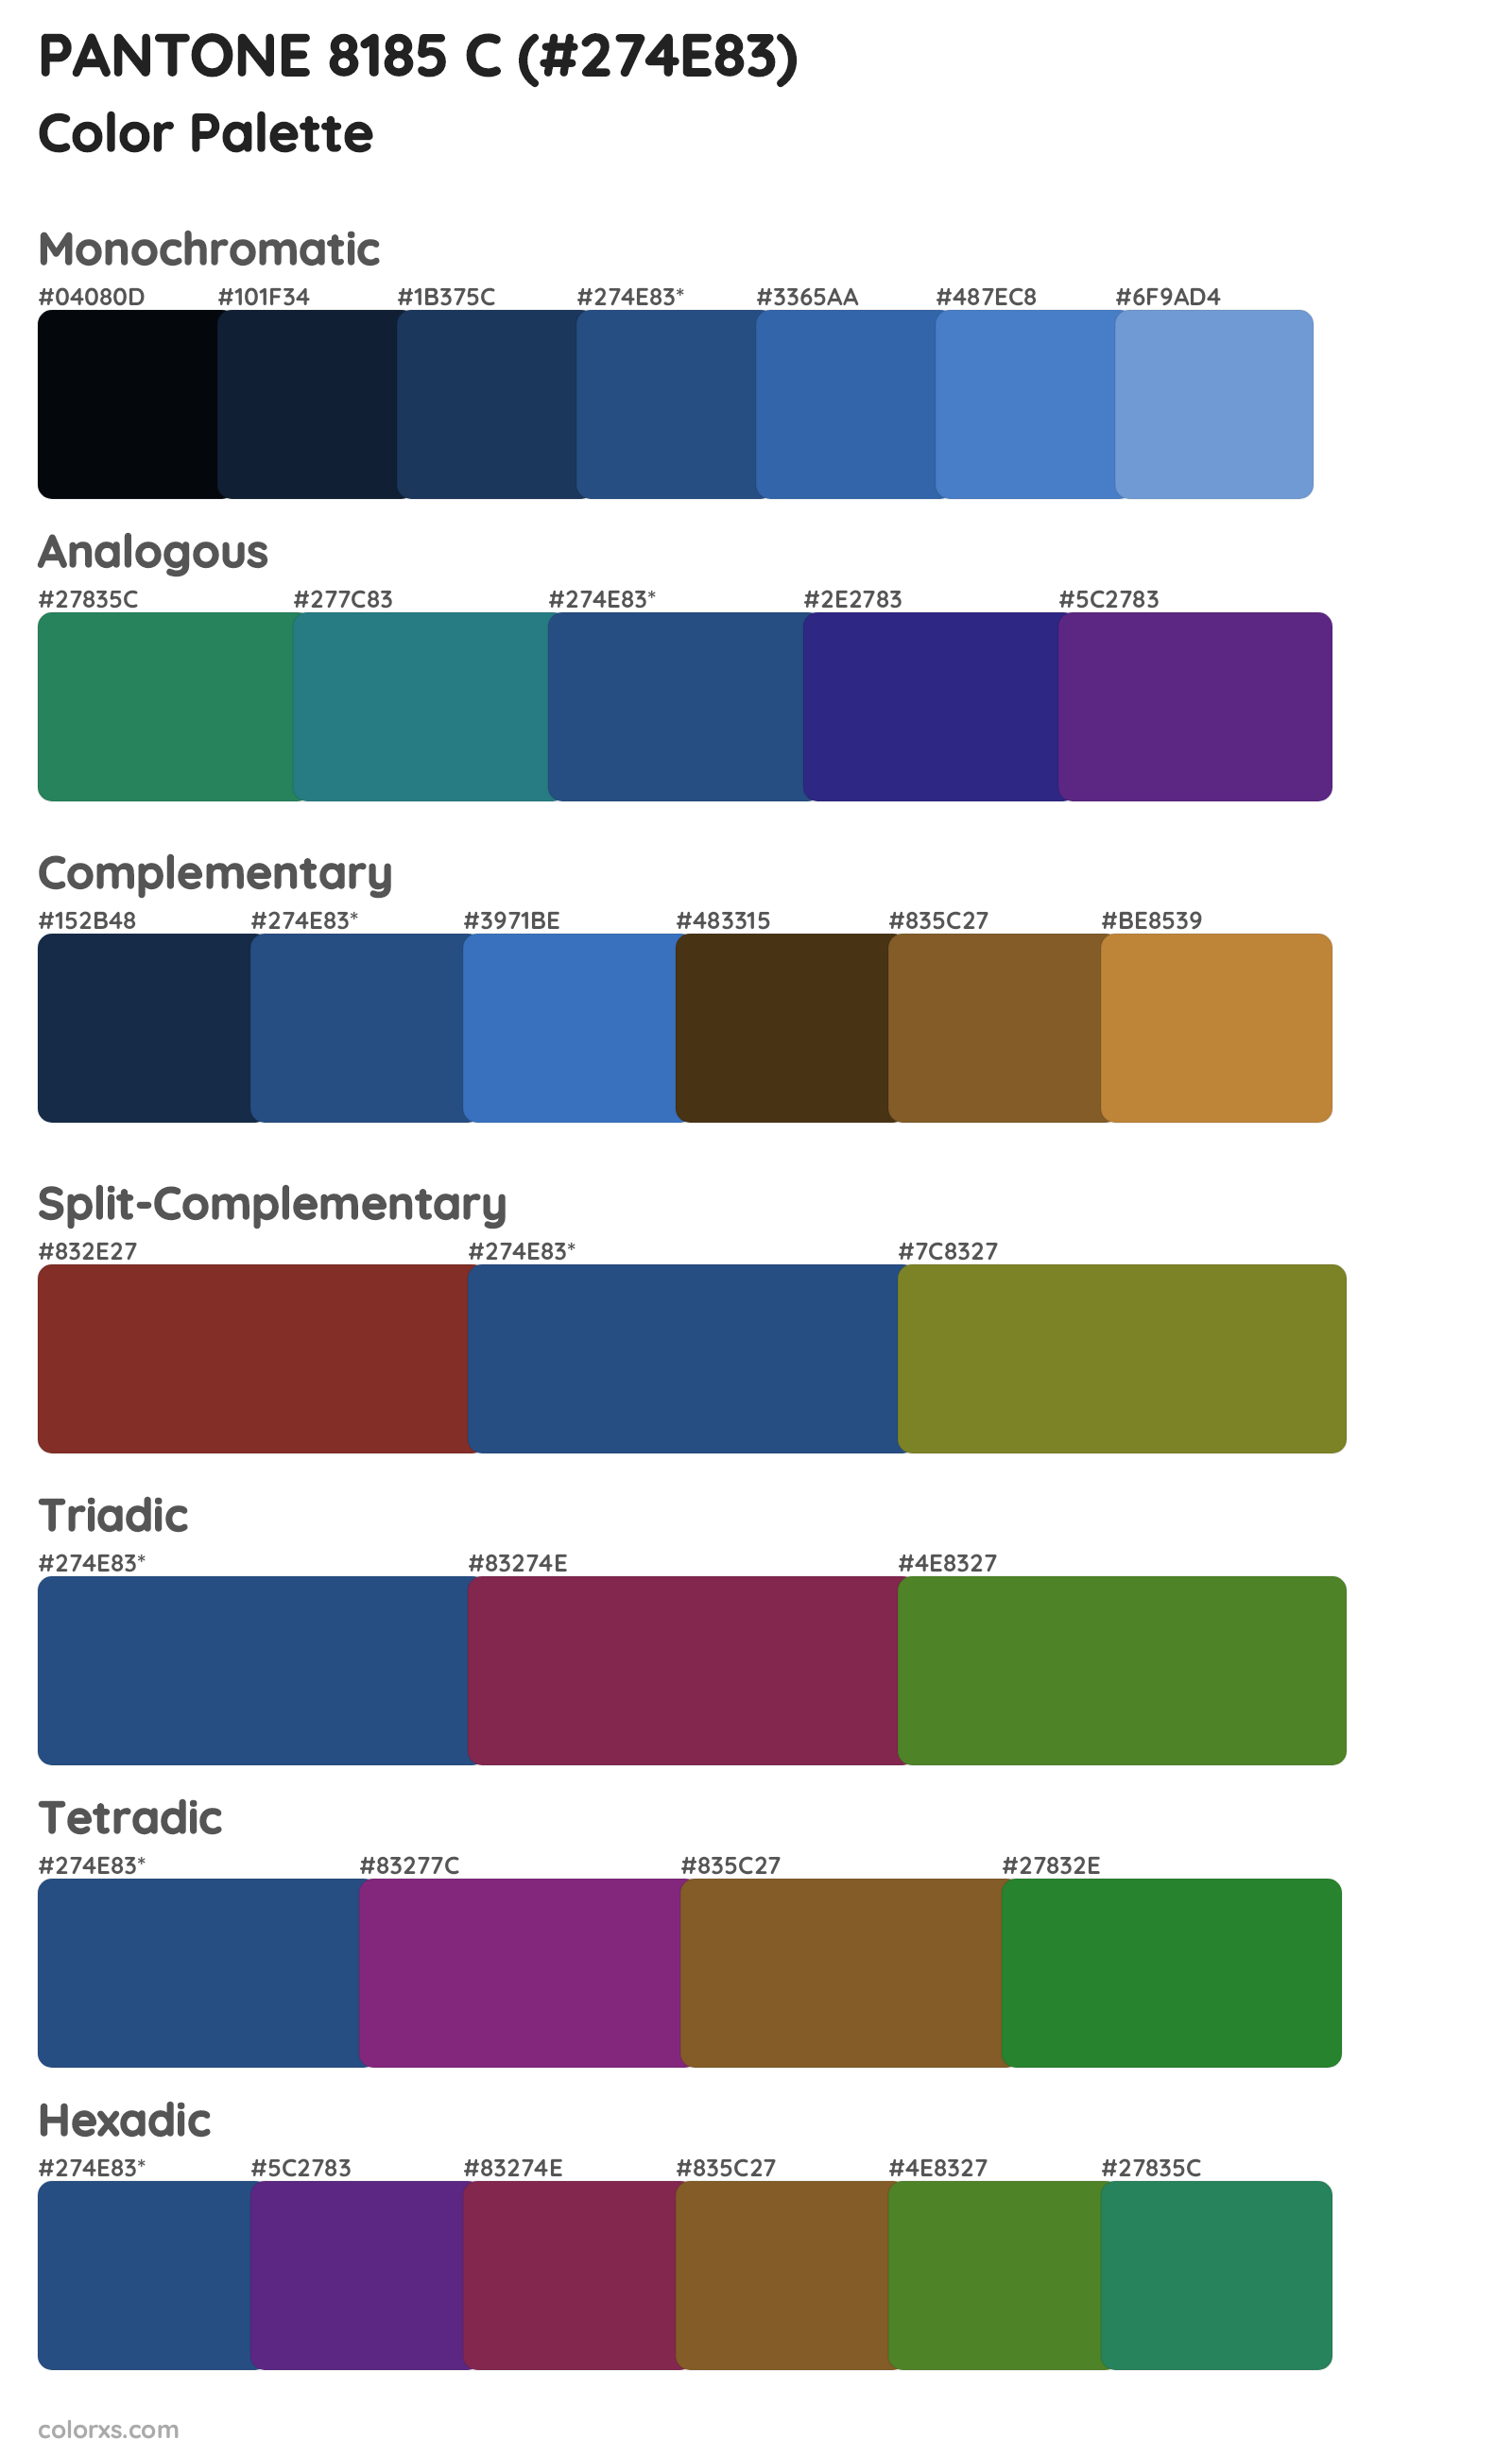 PANTONE 8185 C Color Scheme Palettes